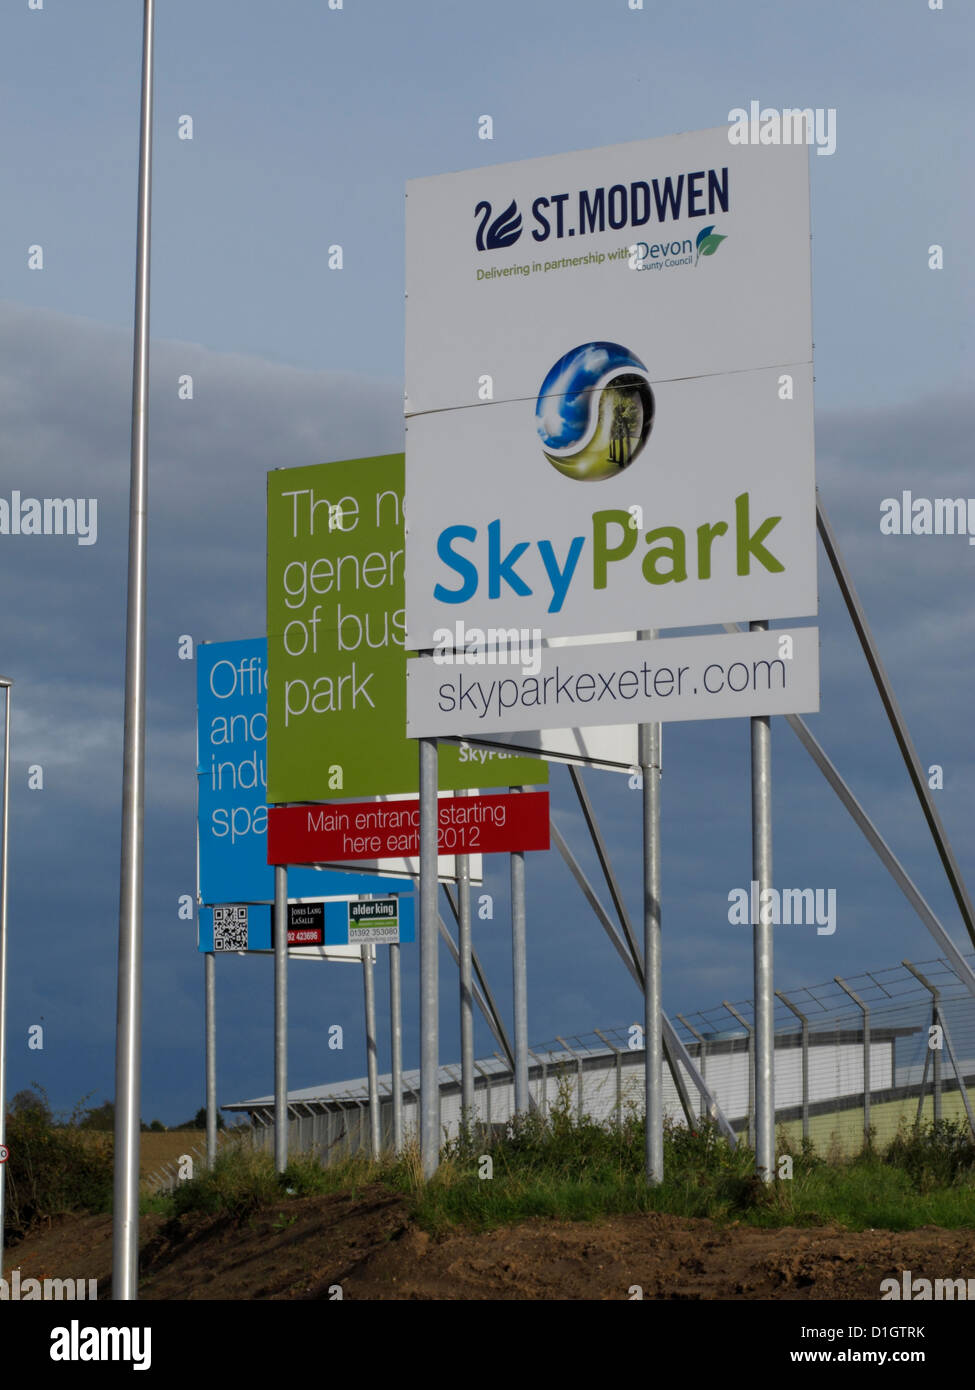 Skypark Nuevo desarrollo comercial por promotor St Modwen cerca de Exeter Airport Devon UK Foto de stock